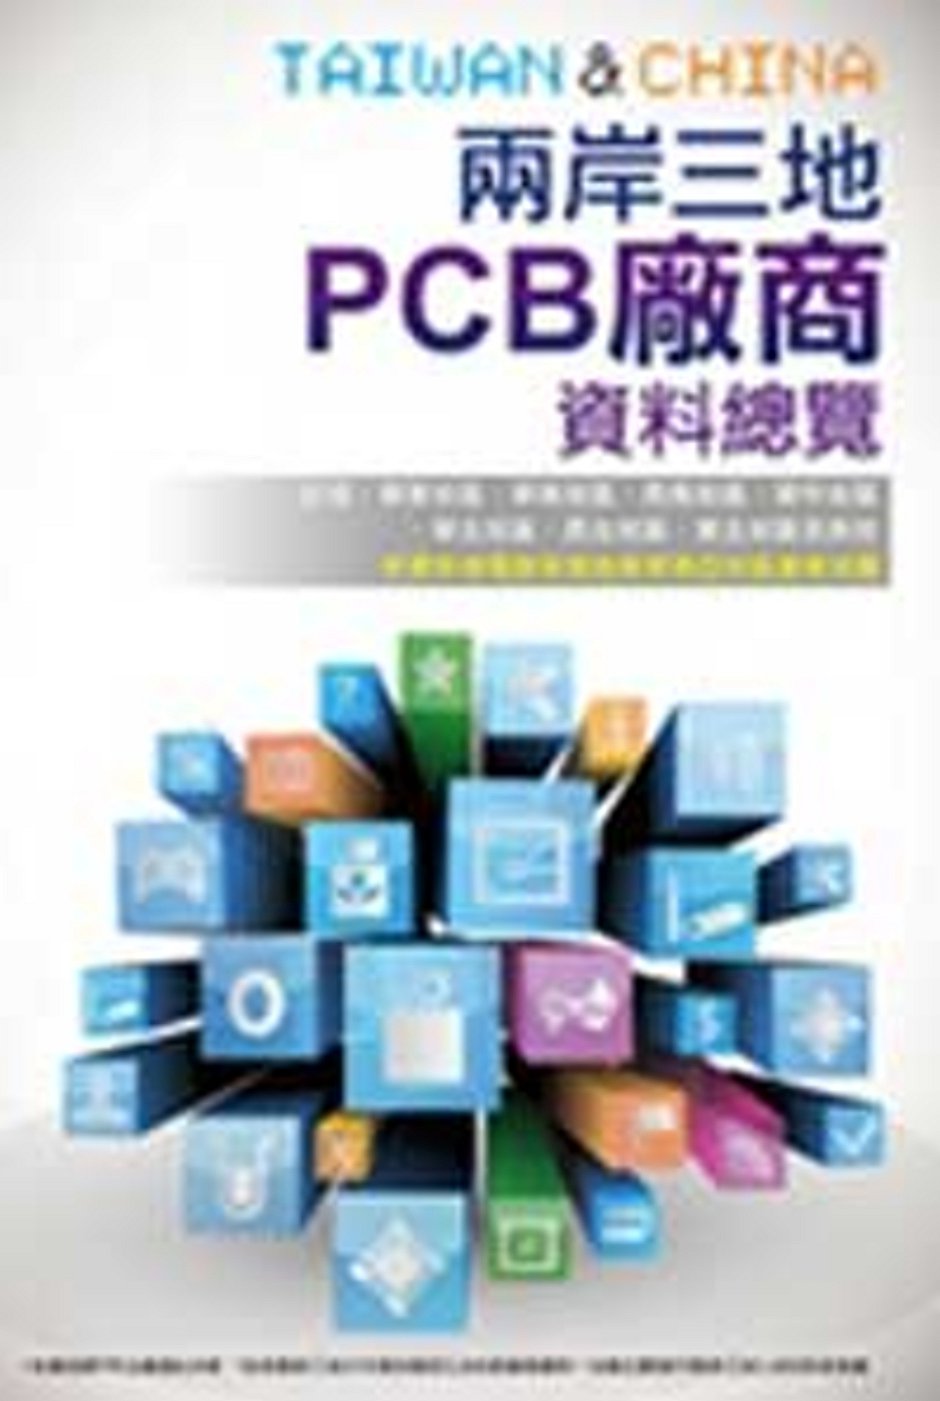 2014兩岸三地PCB廠商資料總覽